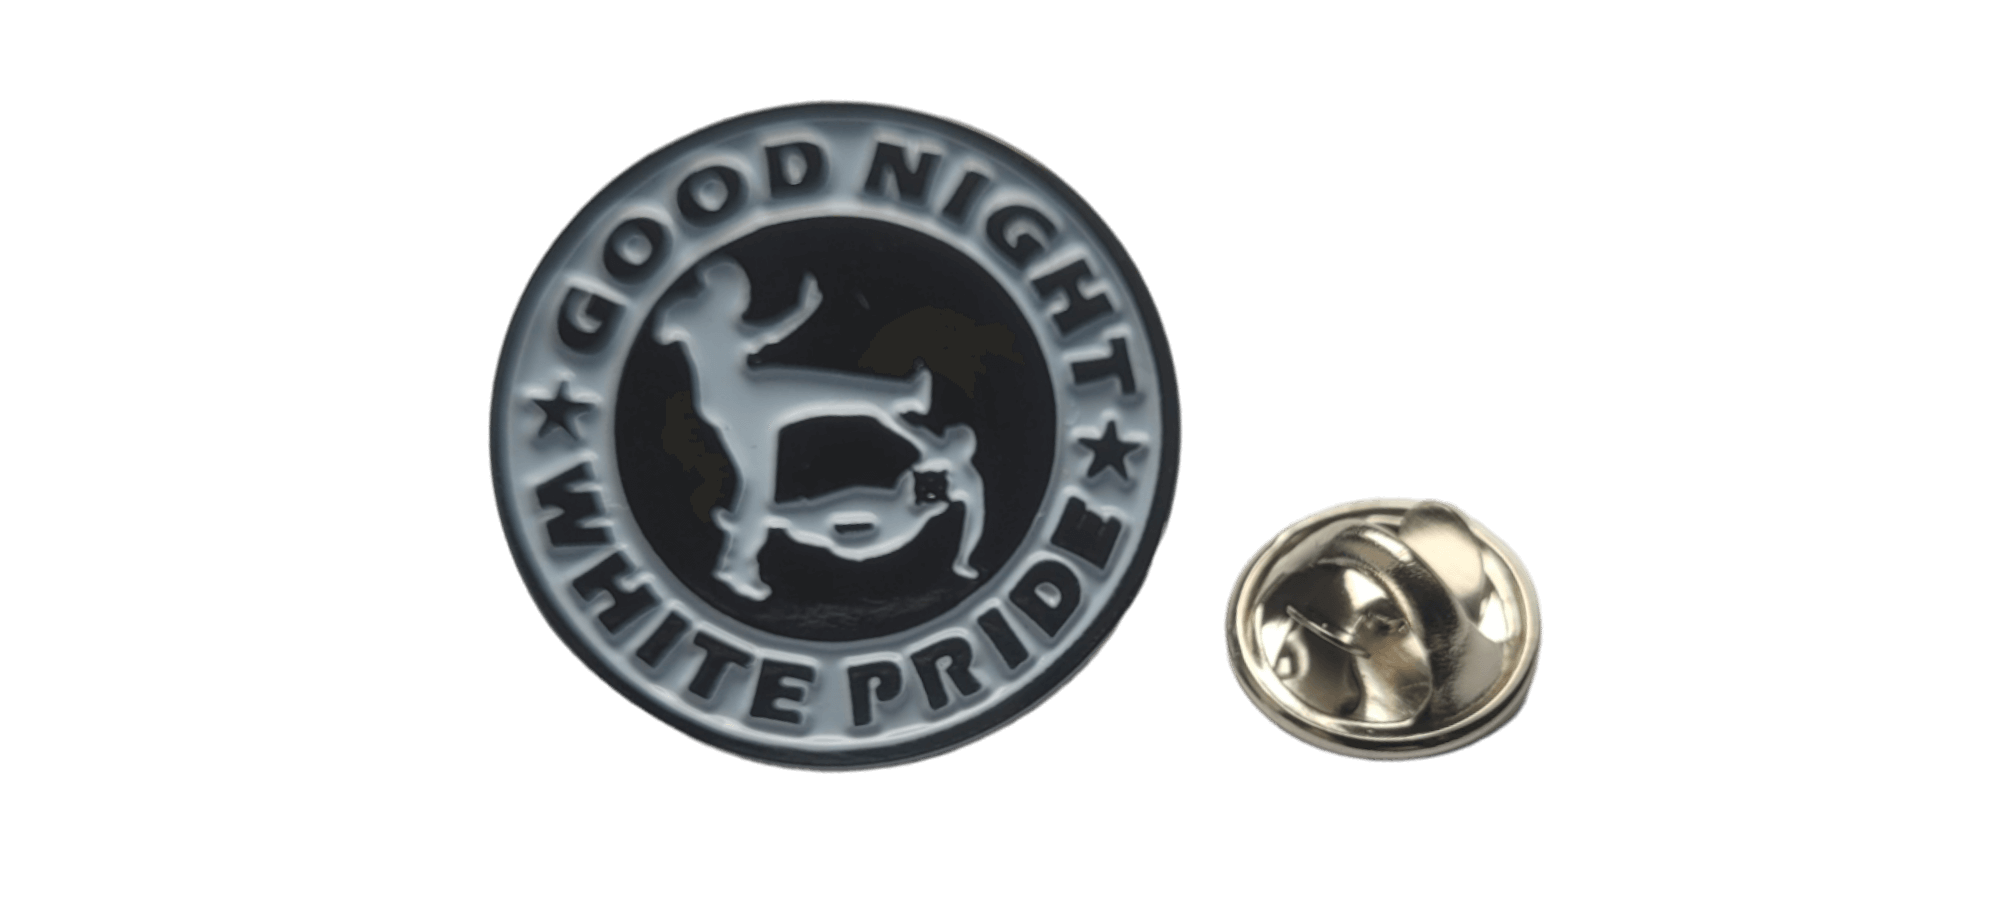 Pin – Good Night White Pride